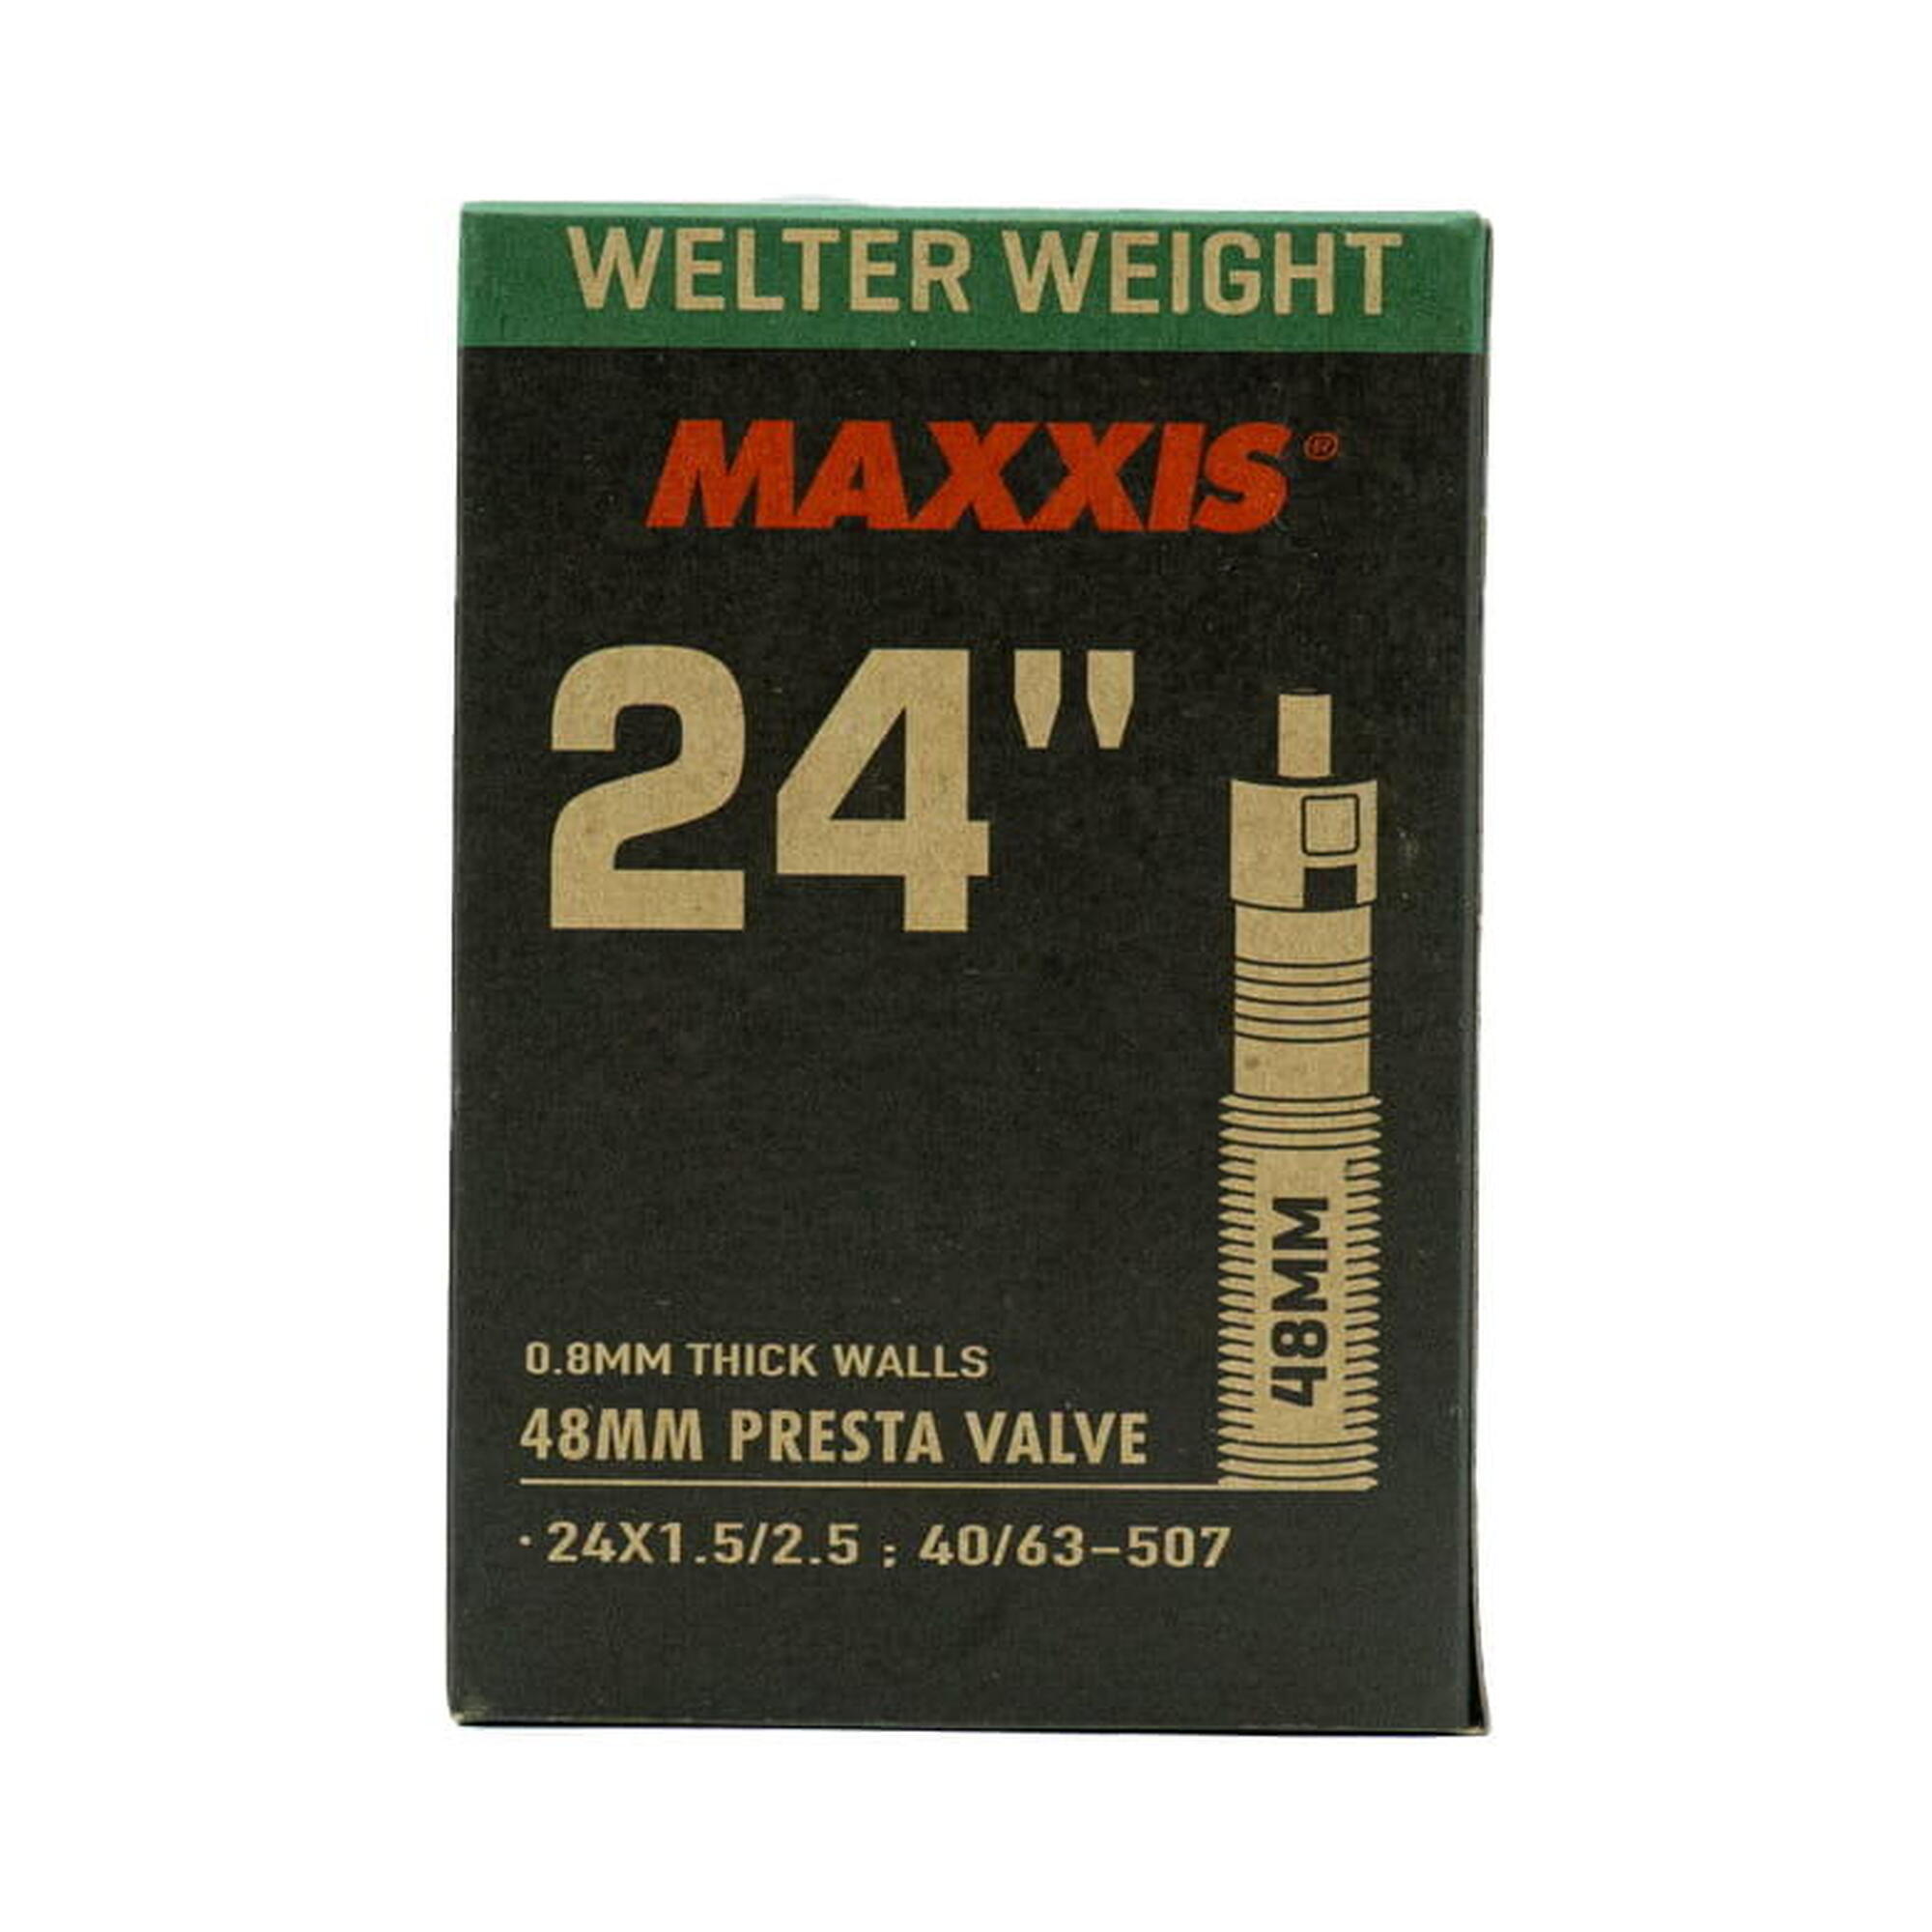 Welter Weight 24 Zoll Schlauch 1.50 - 2.5 - SV 48